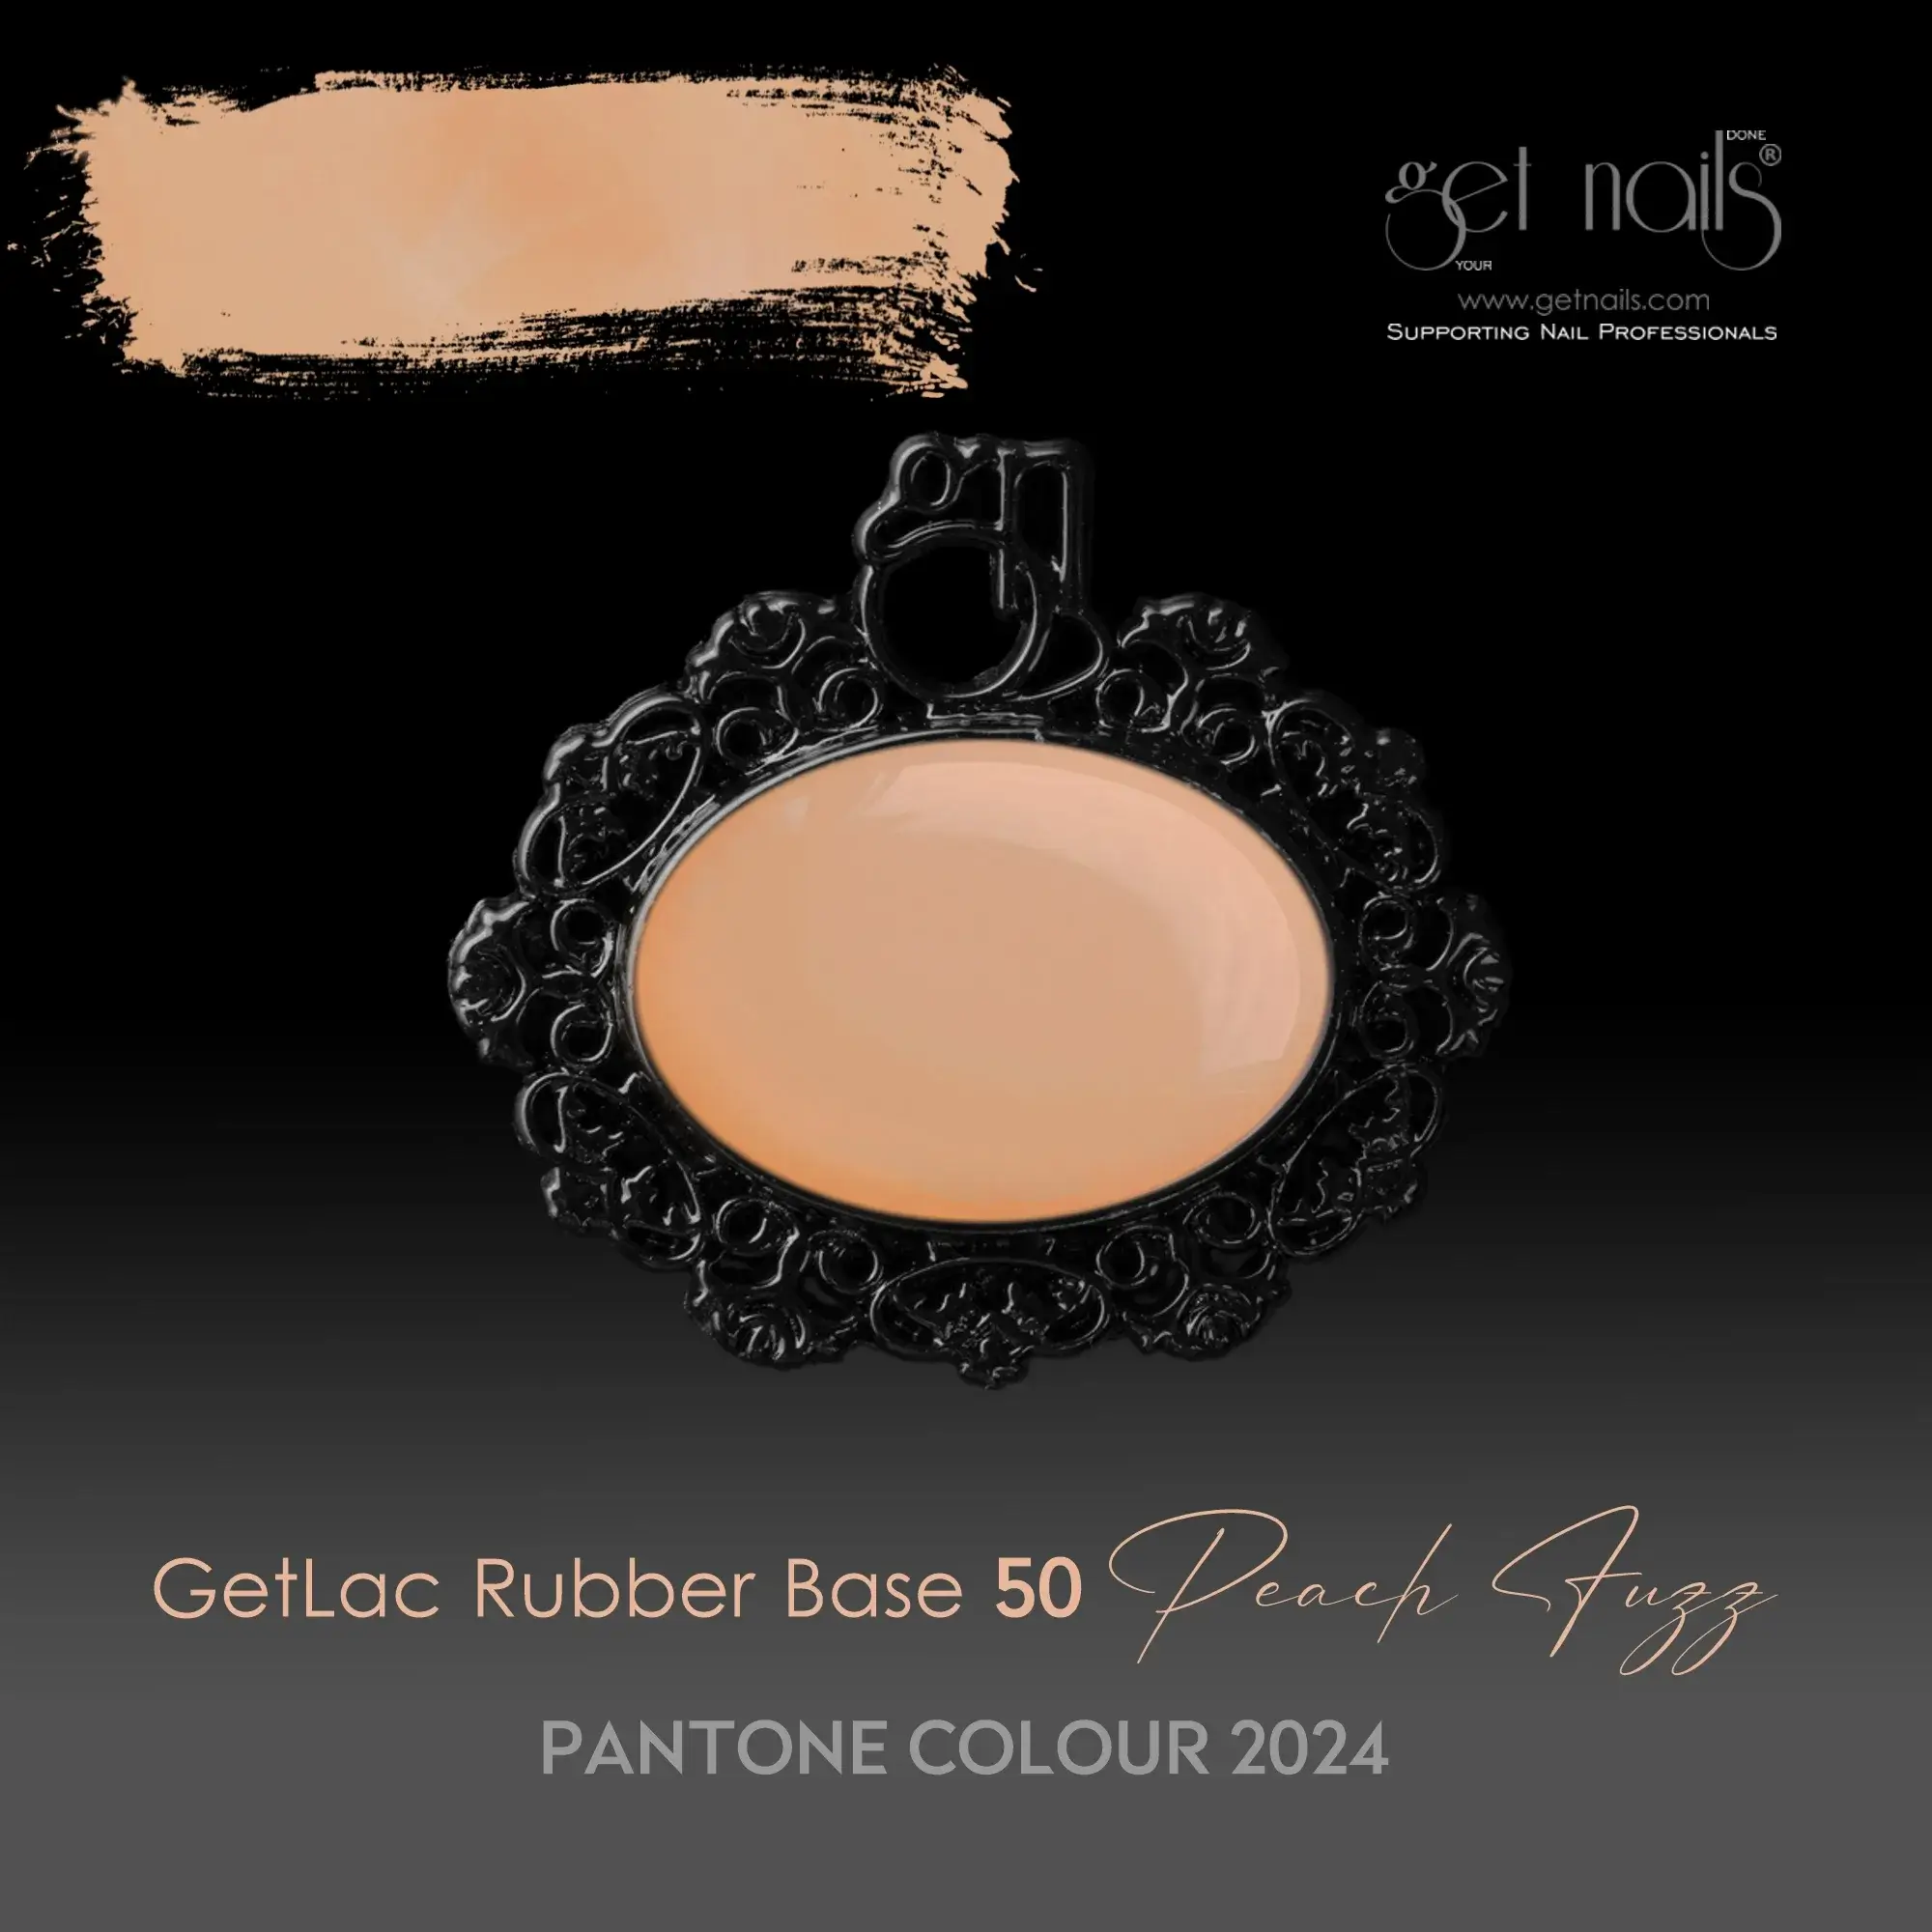 Get Nails Austria — GetLac Rubber Base 50 Peach Fuzz 15 г